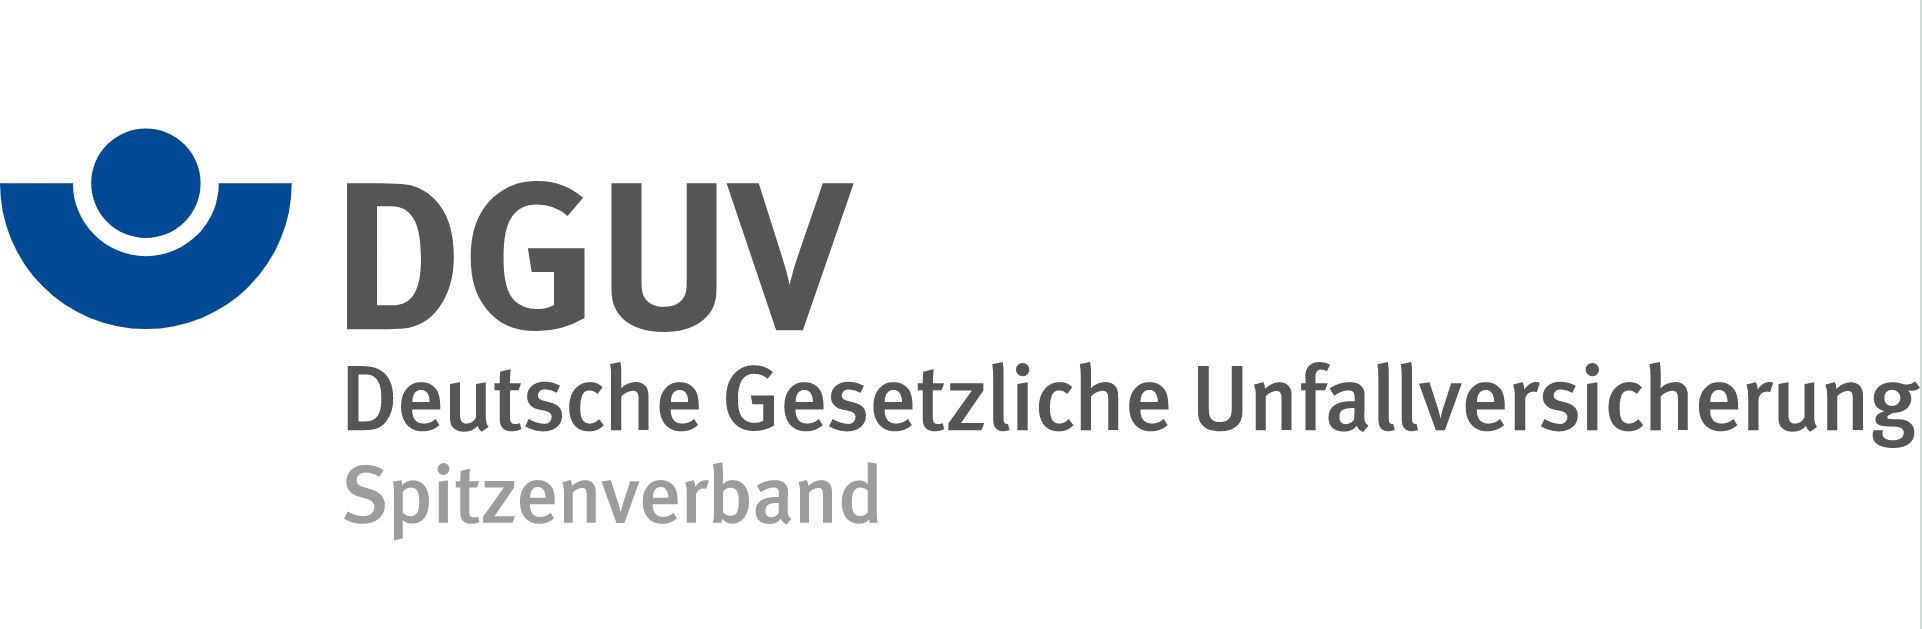 Logo der Deutschen Gestzlichen Unfallversicherung - Spitzenverband